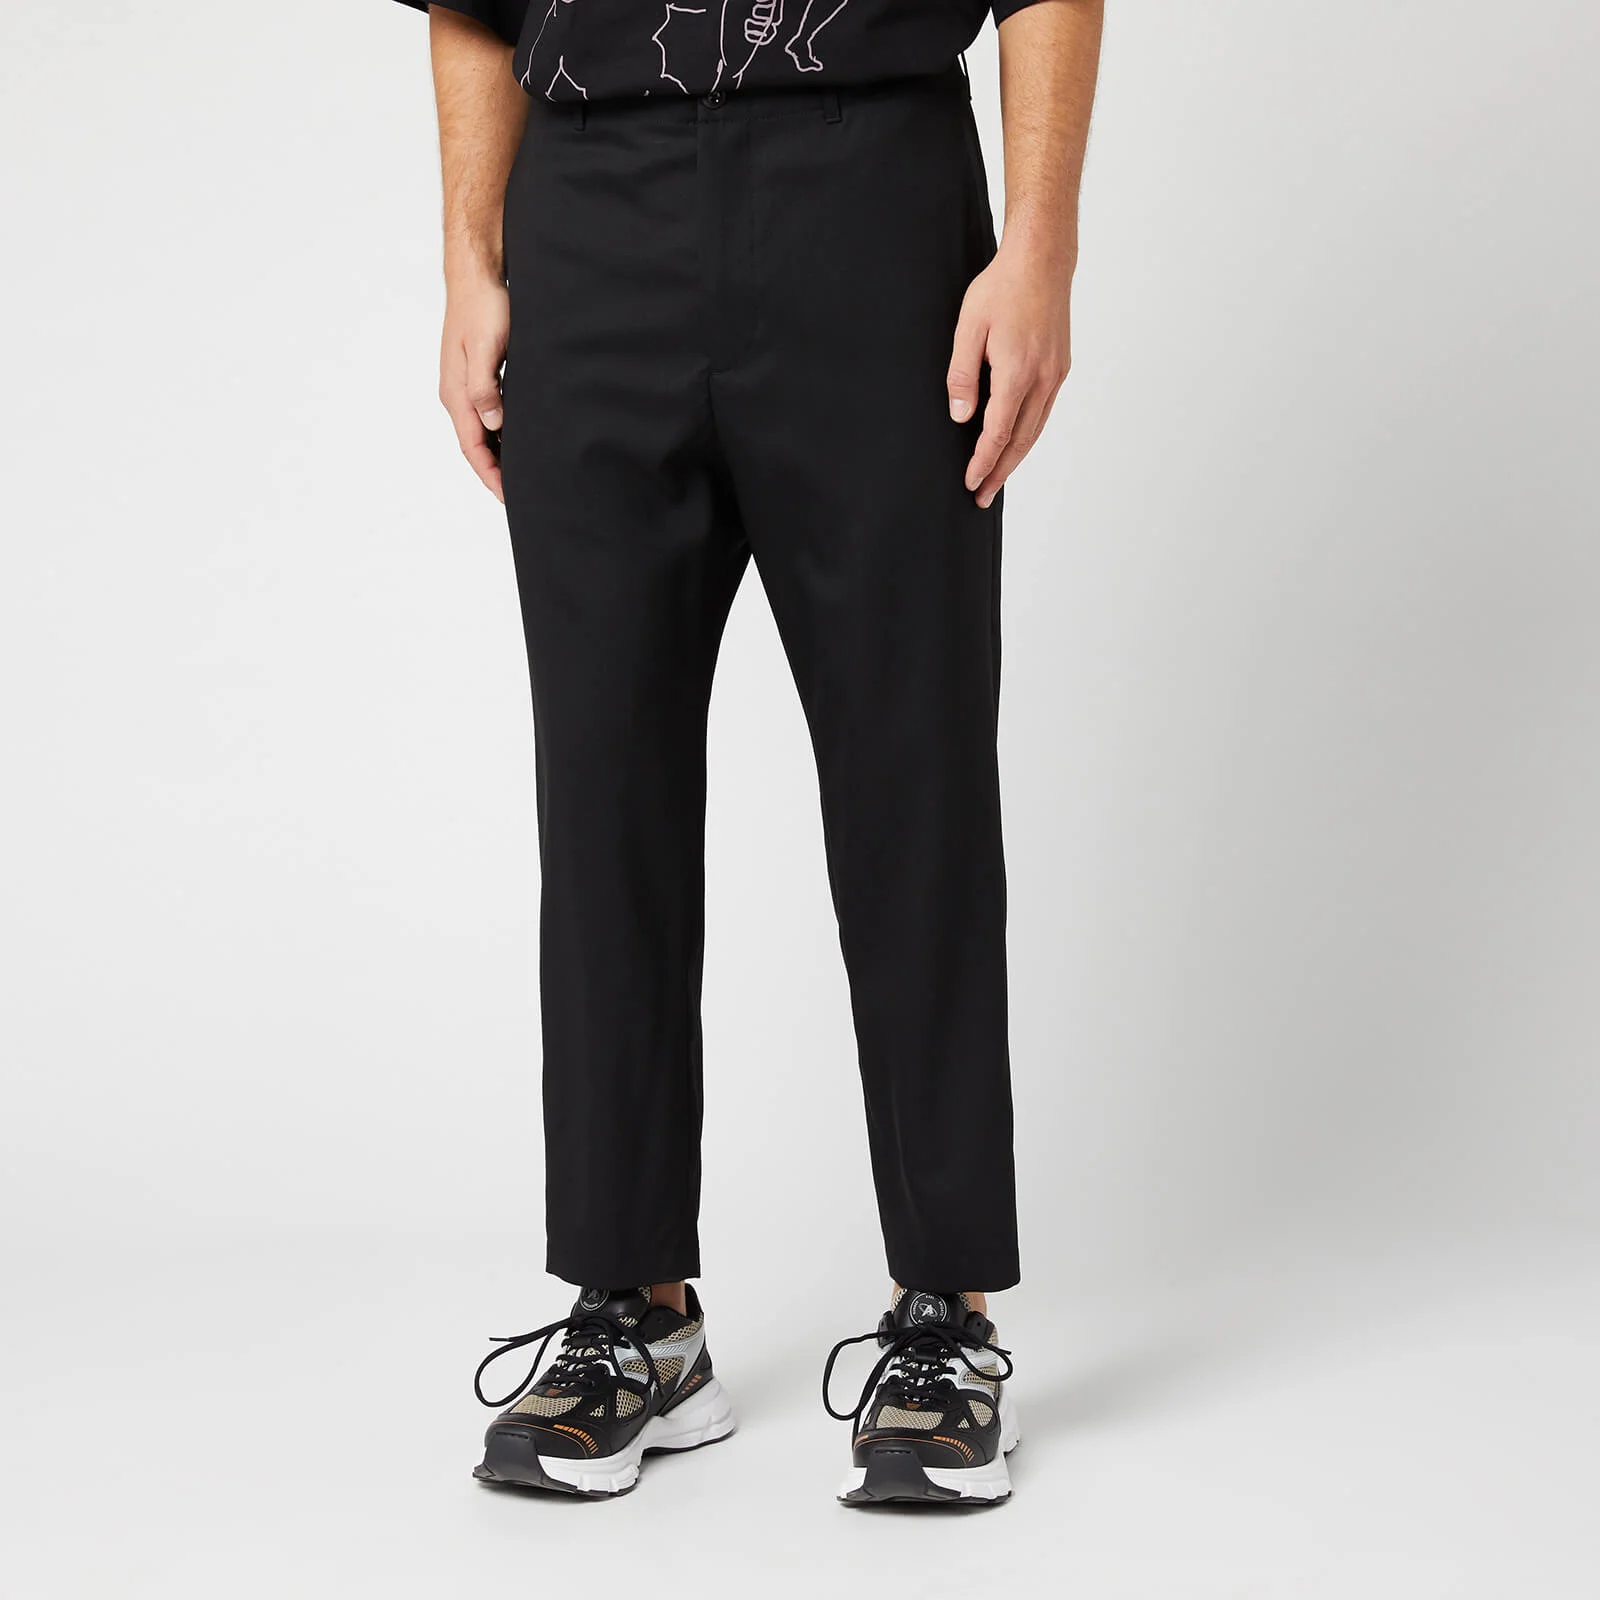 OAMC Men's Zip Pants - Black Image 1